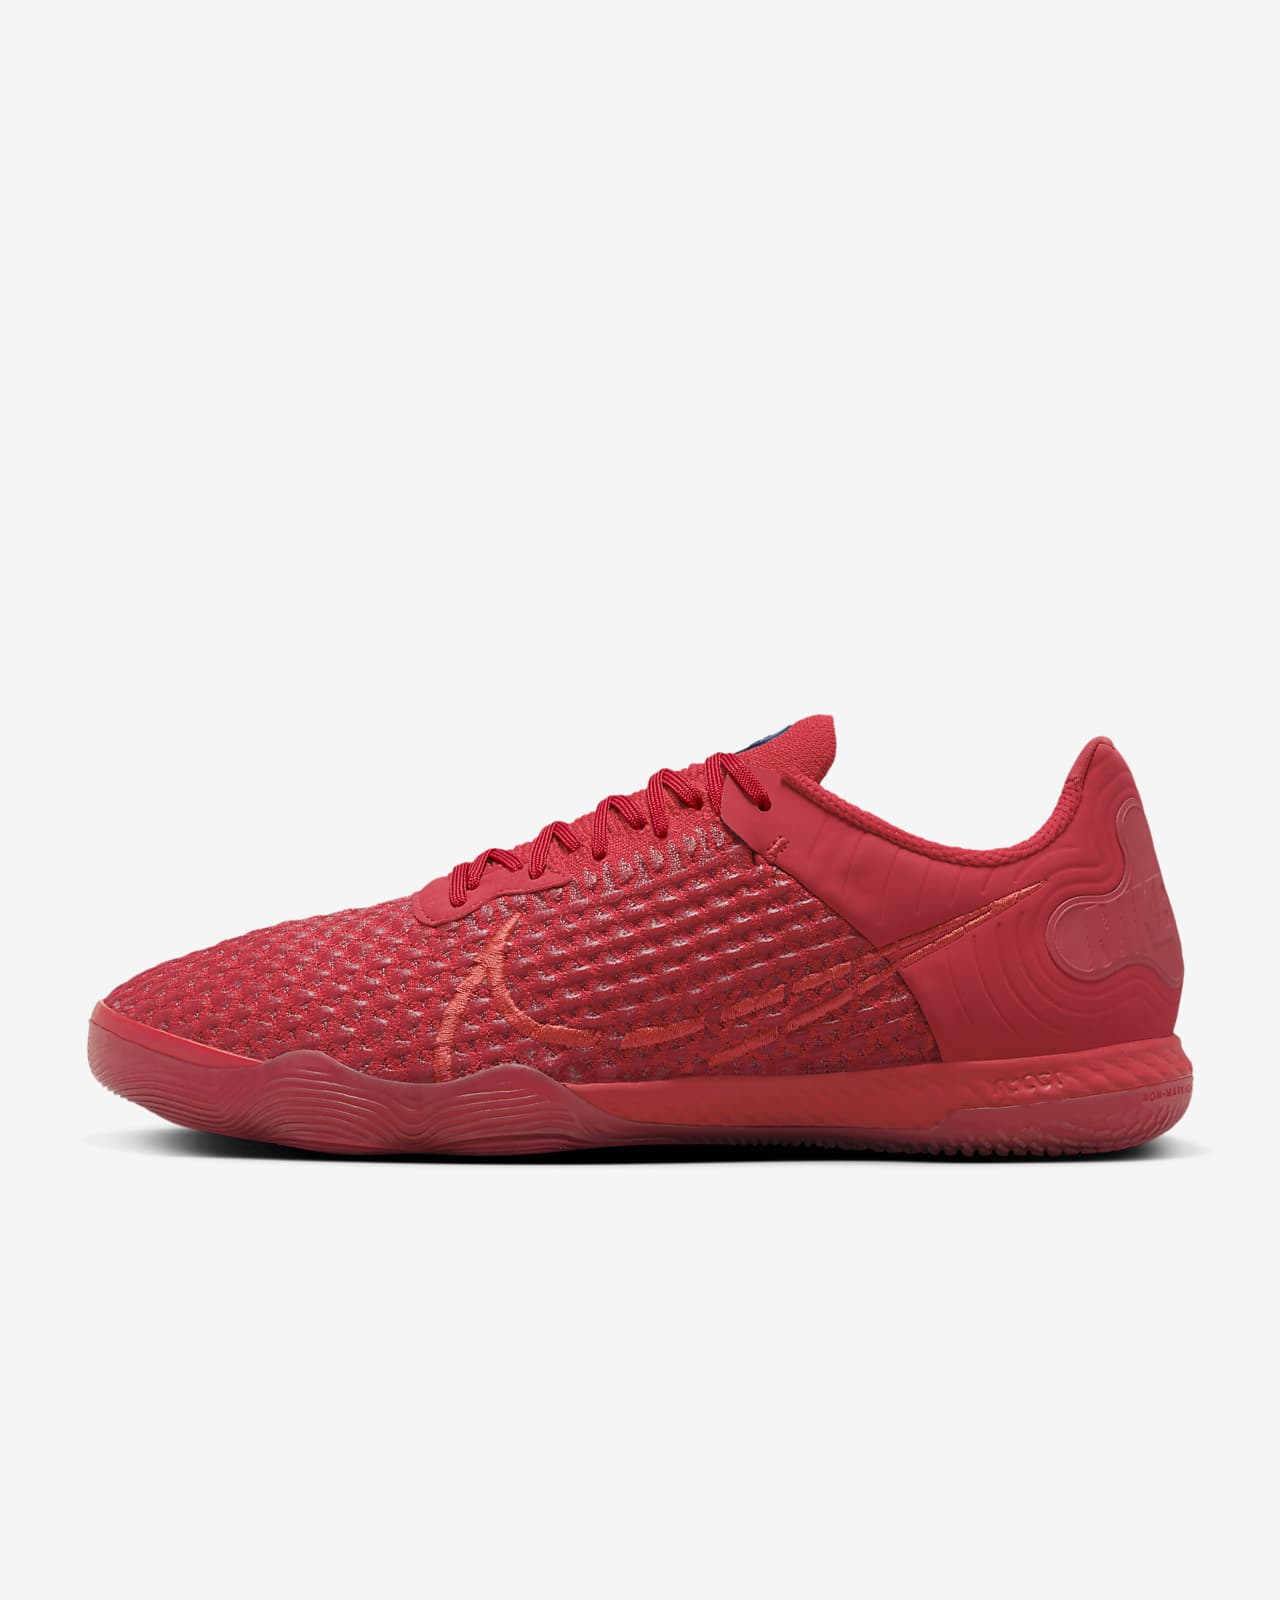 Ποδοσφαιρικά παπούτσια χαμηλού προφίλ για κλειστά γήπεδα Nike React Gato